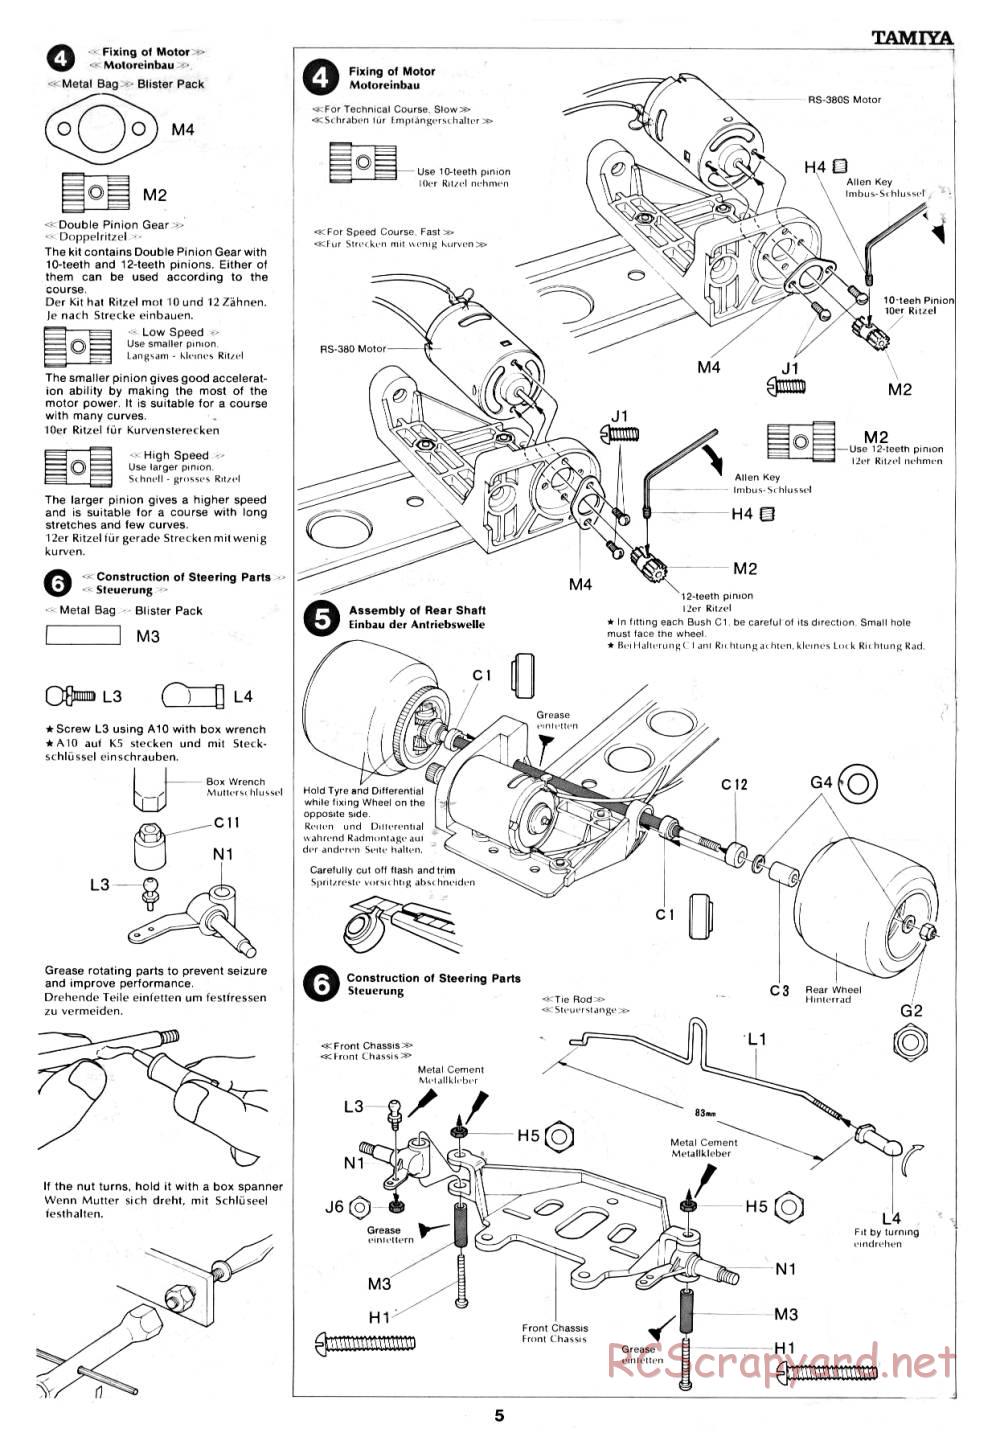 Tamiya - March 782 BMW (F2) - 58013 - Manual - Page 5